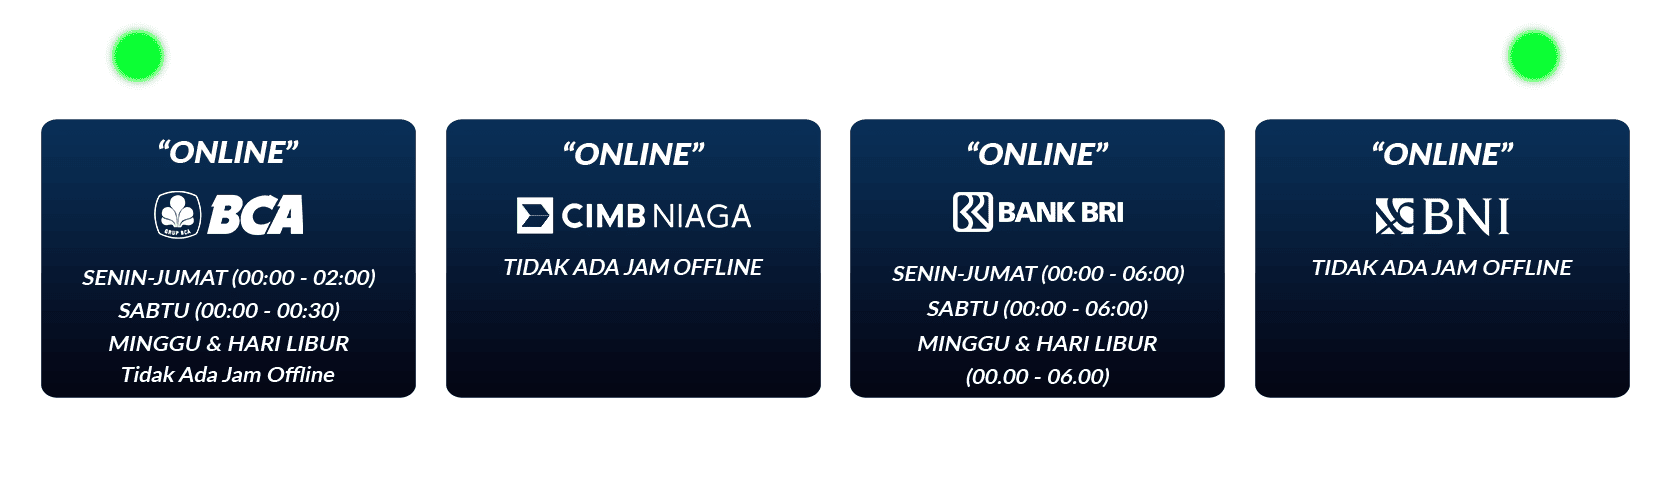 jadwal bank deposit withdrawal